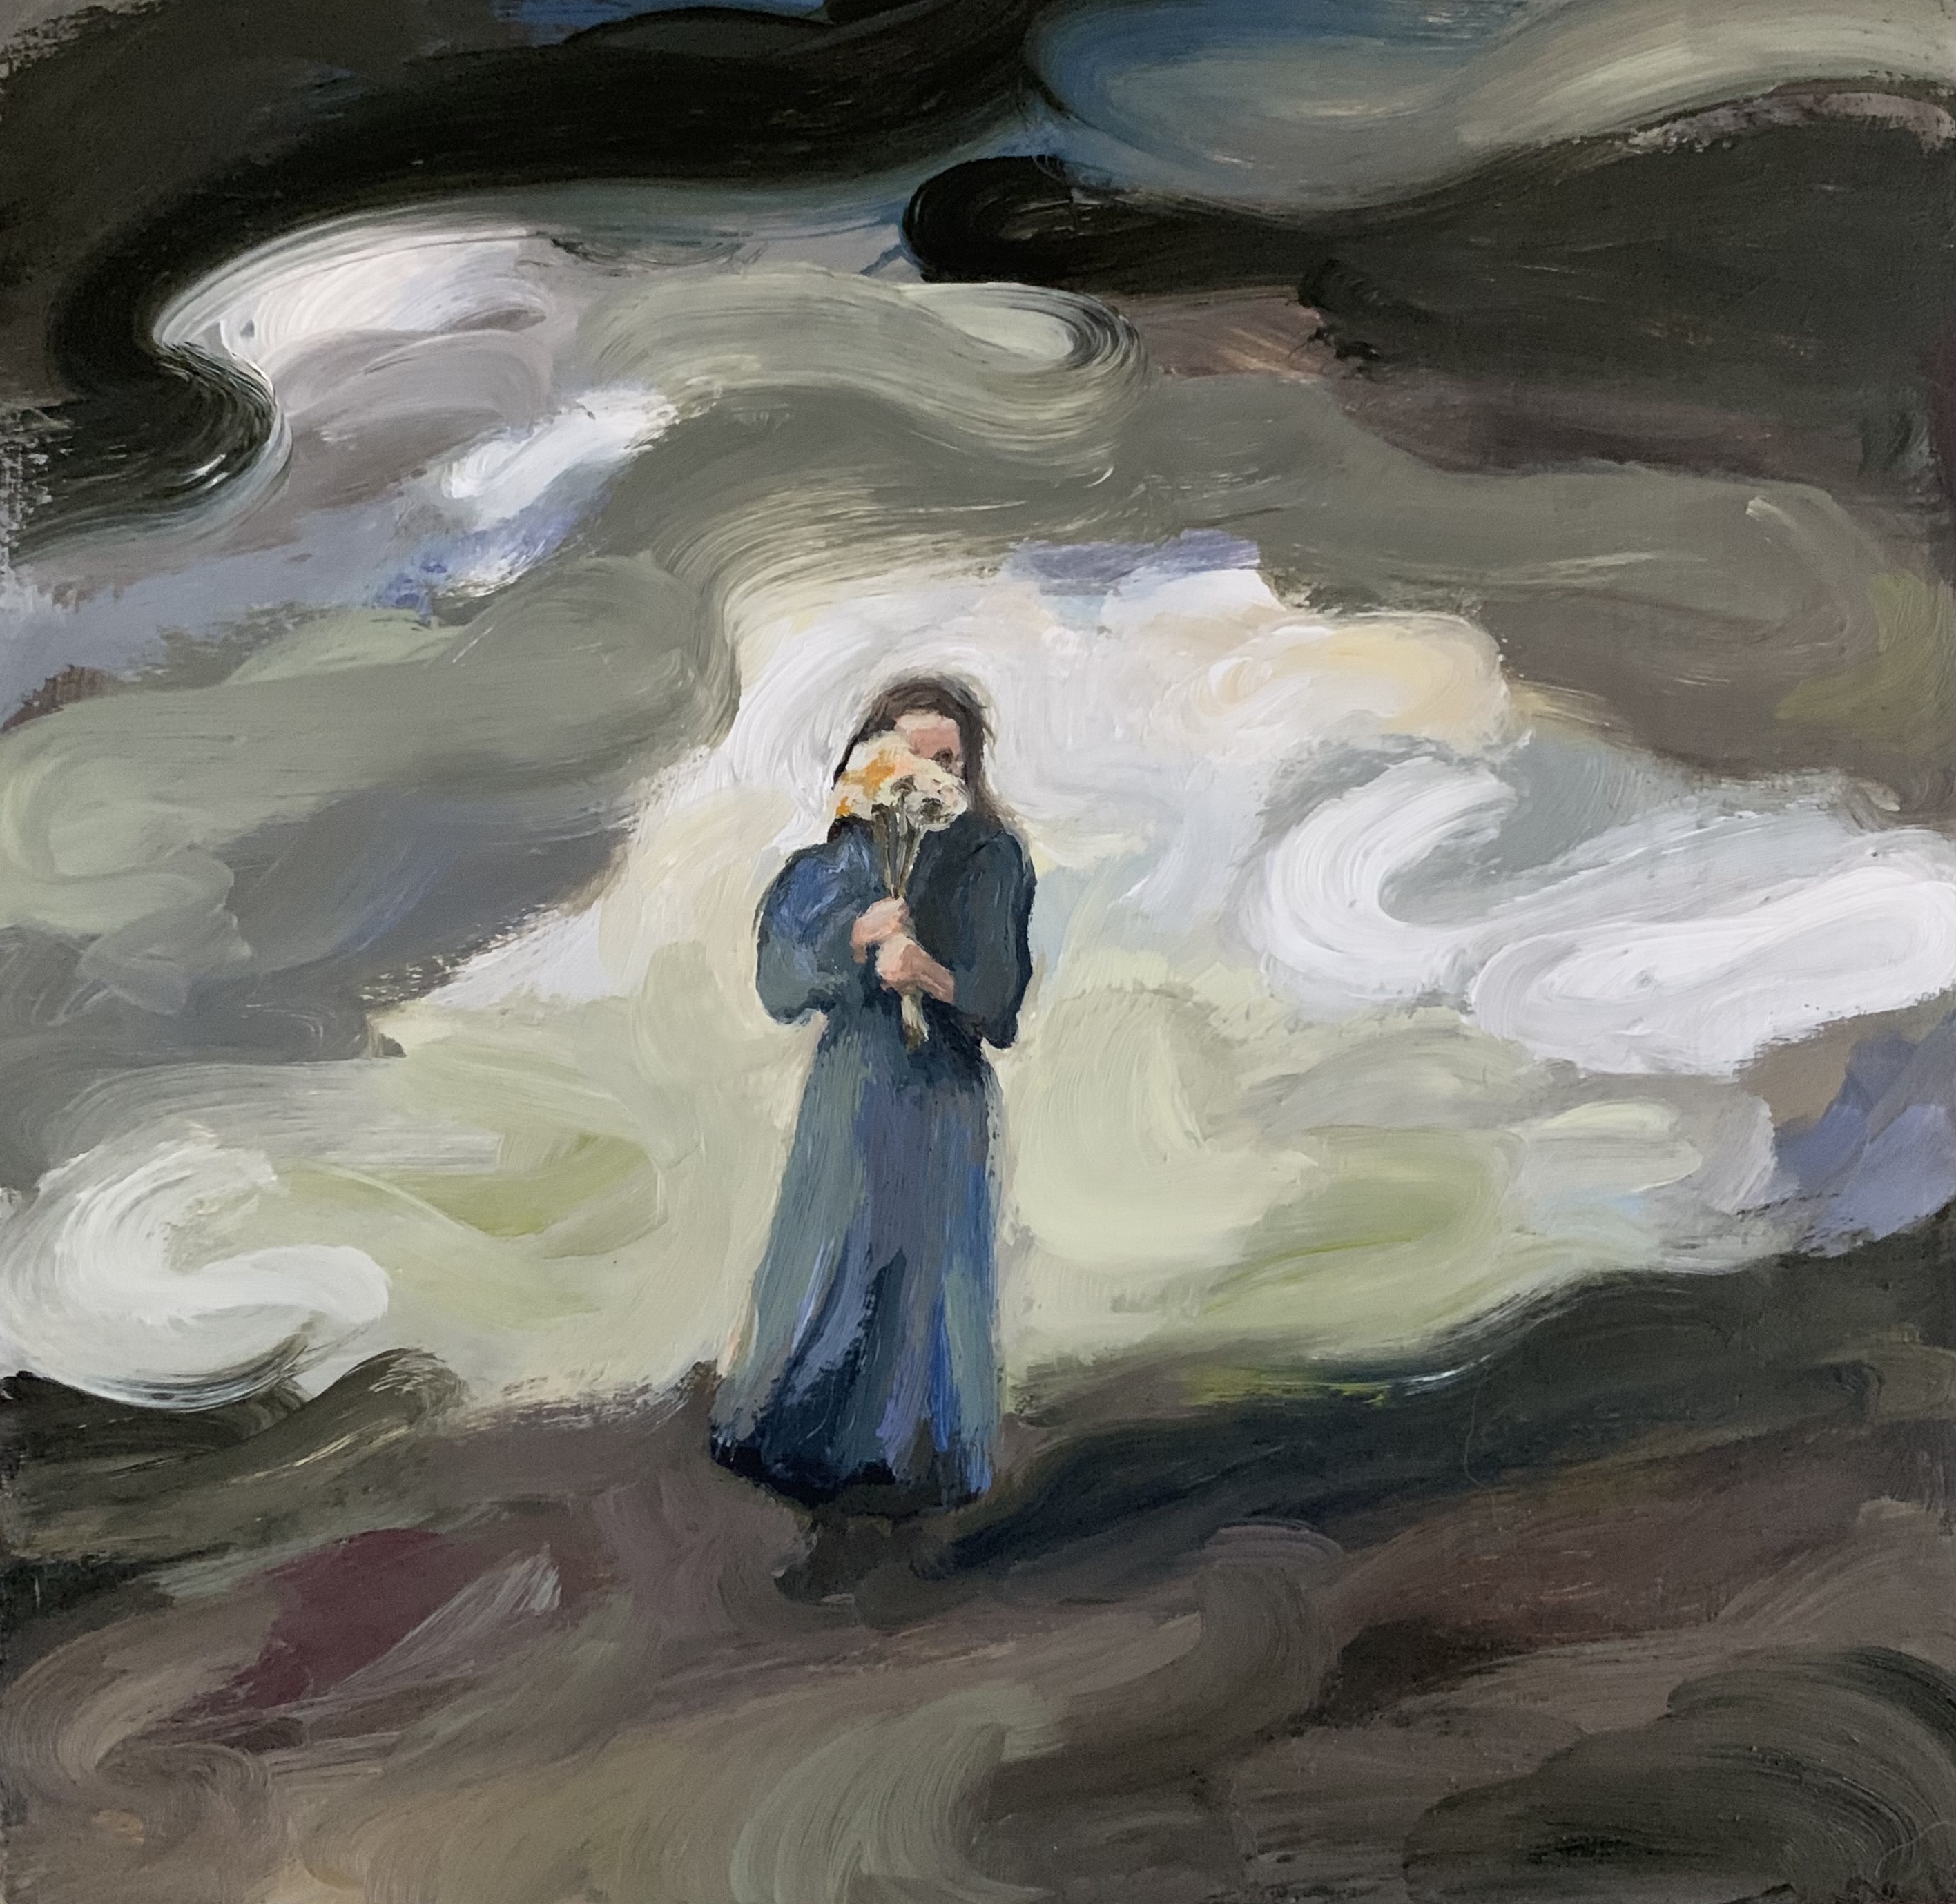 Swan Scalabre - Jane Eyre - huile sur bois - 15 x 15 cm - 800 €